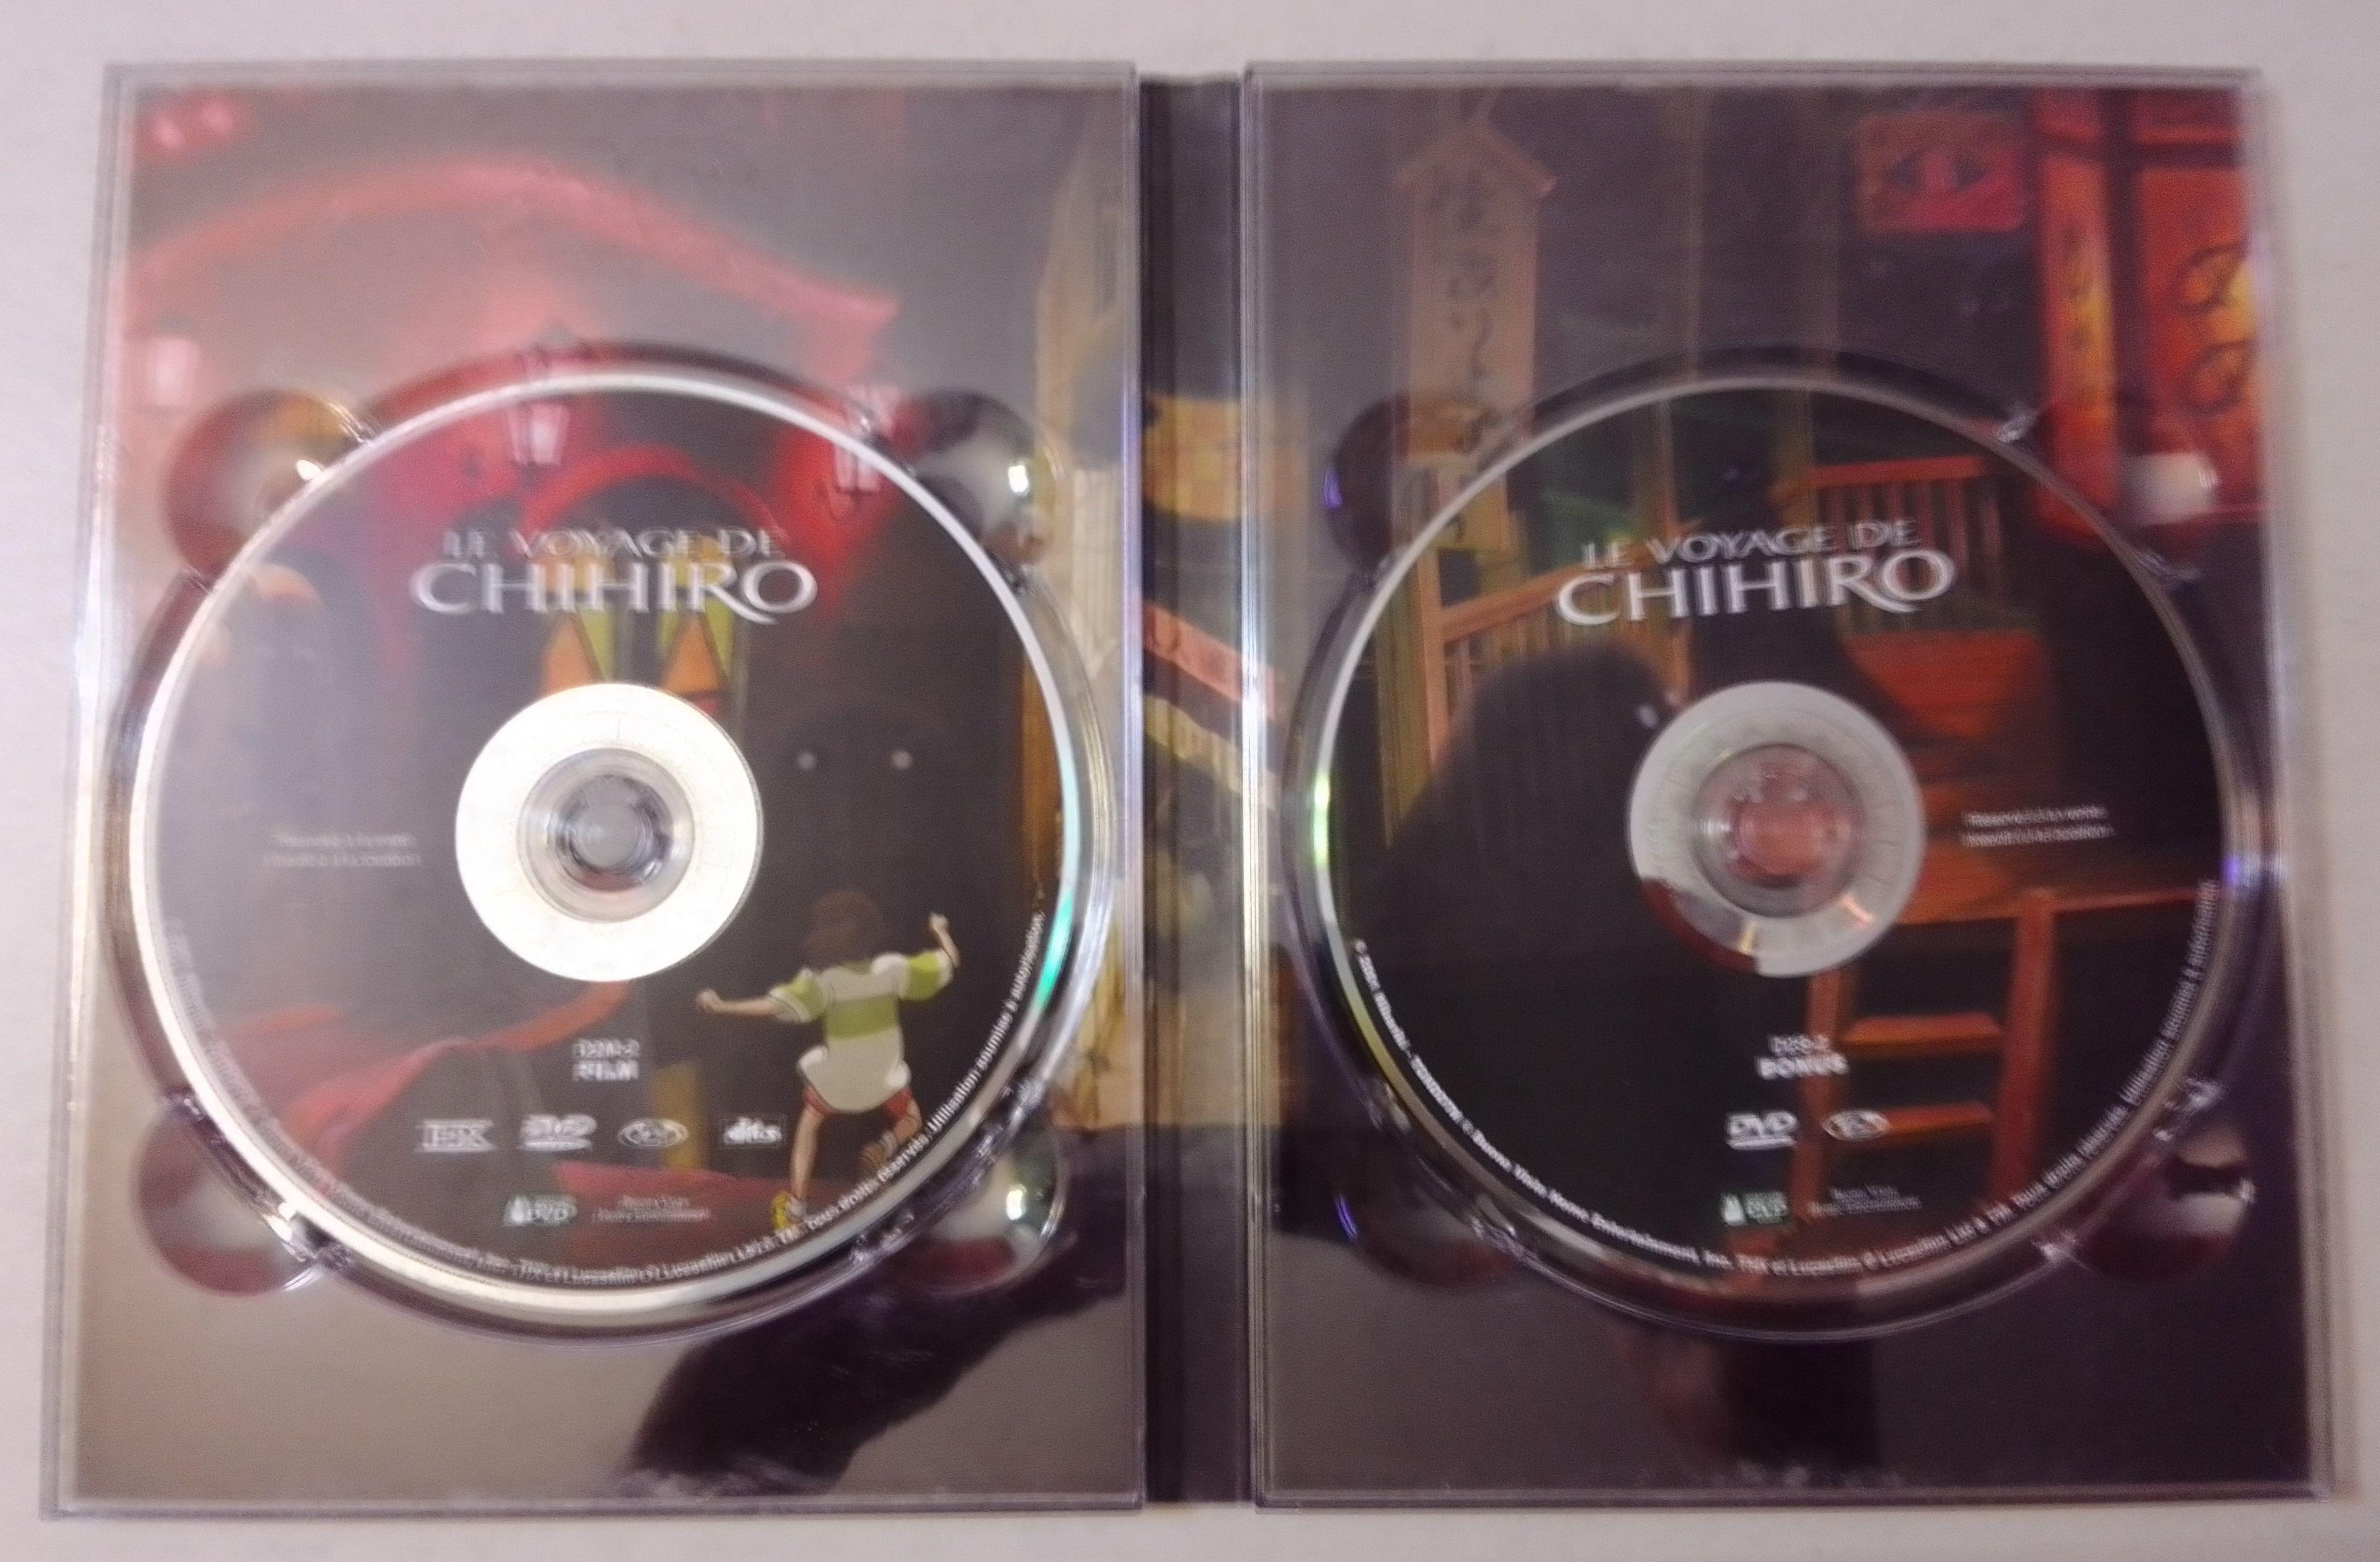 troc de troc dvd enfant "le voyage de chihiro" image 2